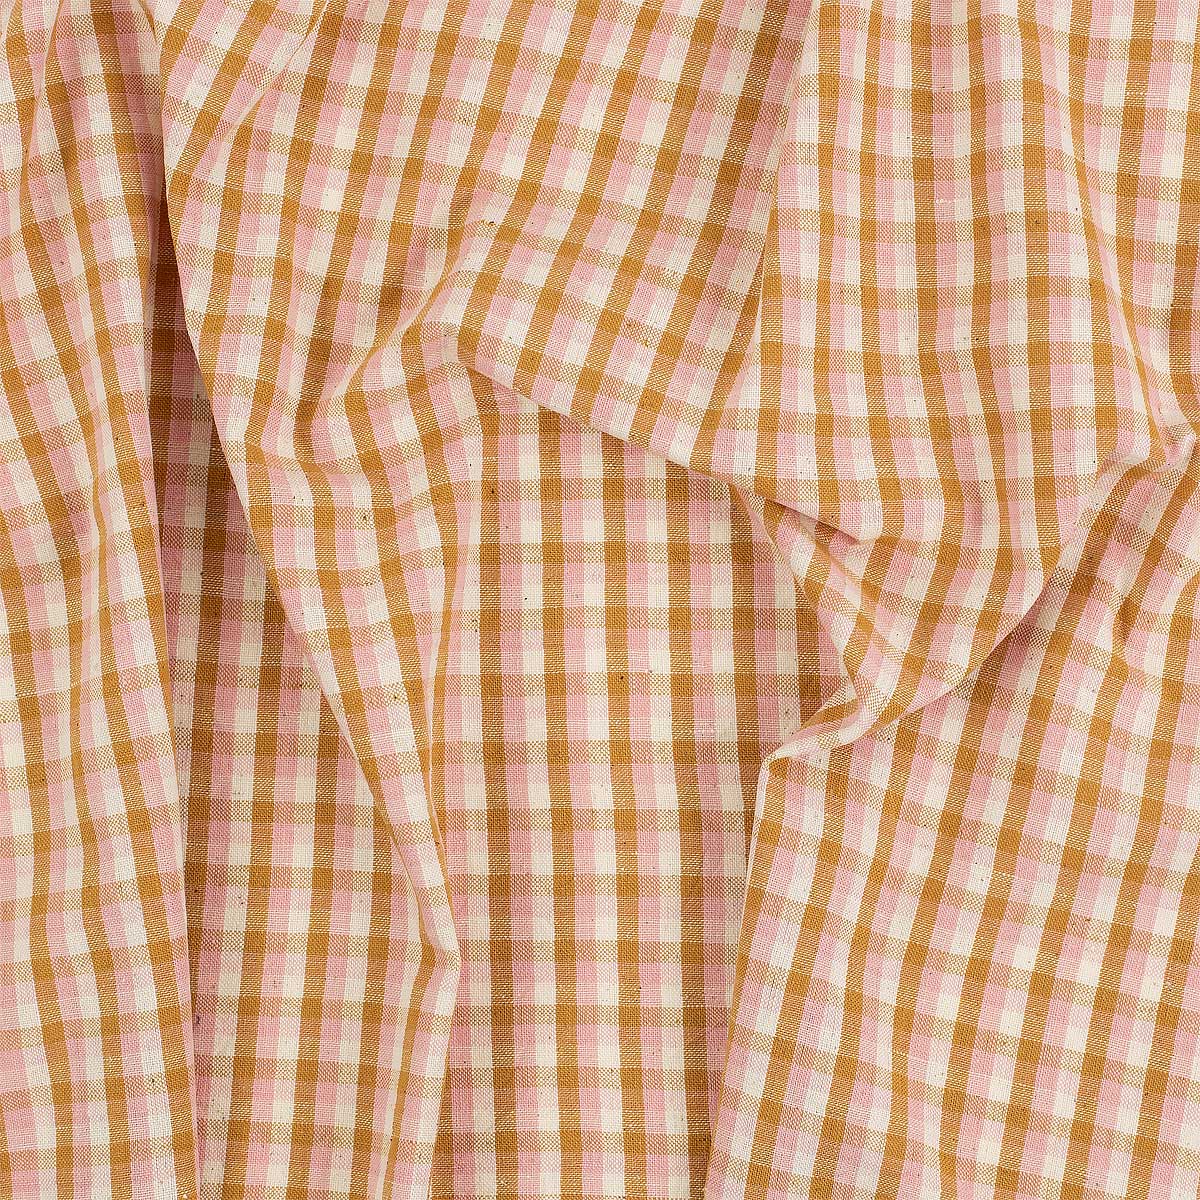 ECO BUFFALO Fabric, pink/orange/white